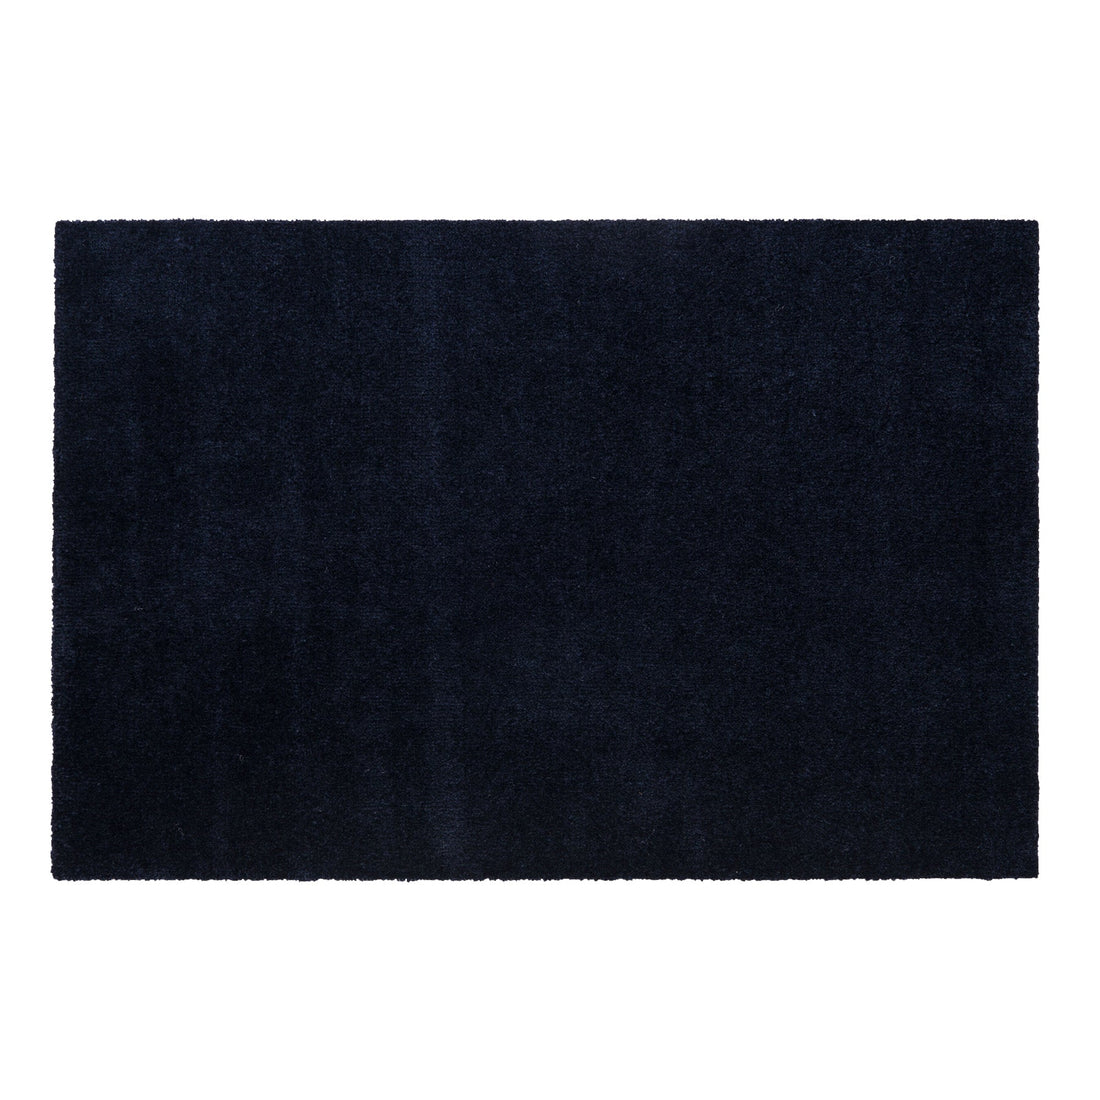 AMARELO MAT 60 x 90 cm - UNI COLOUR/BLUE